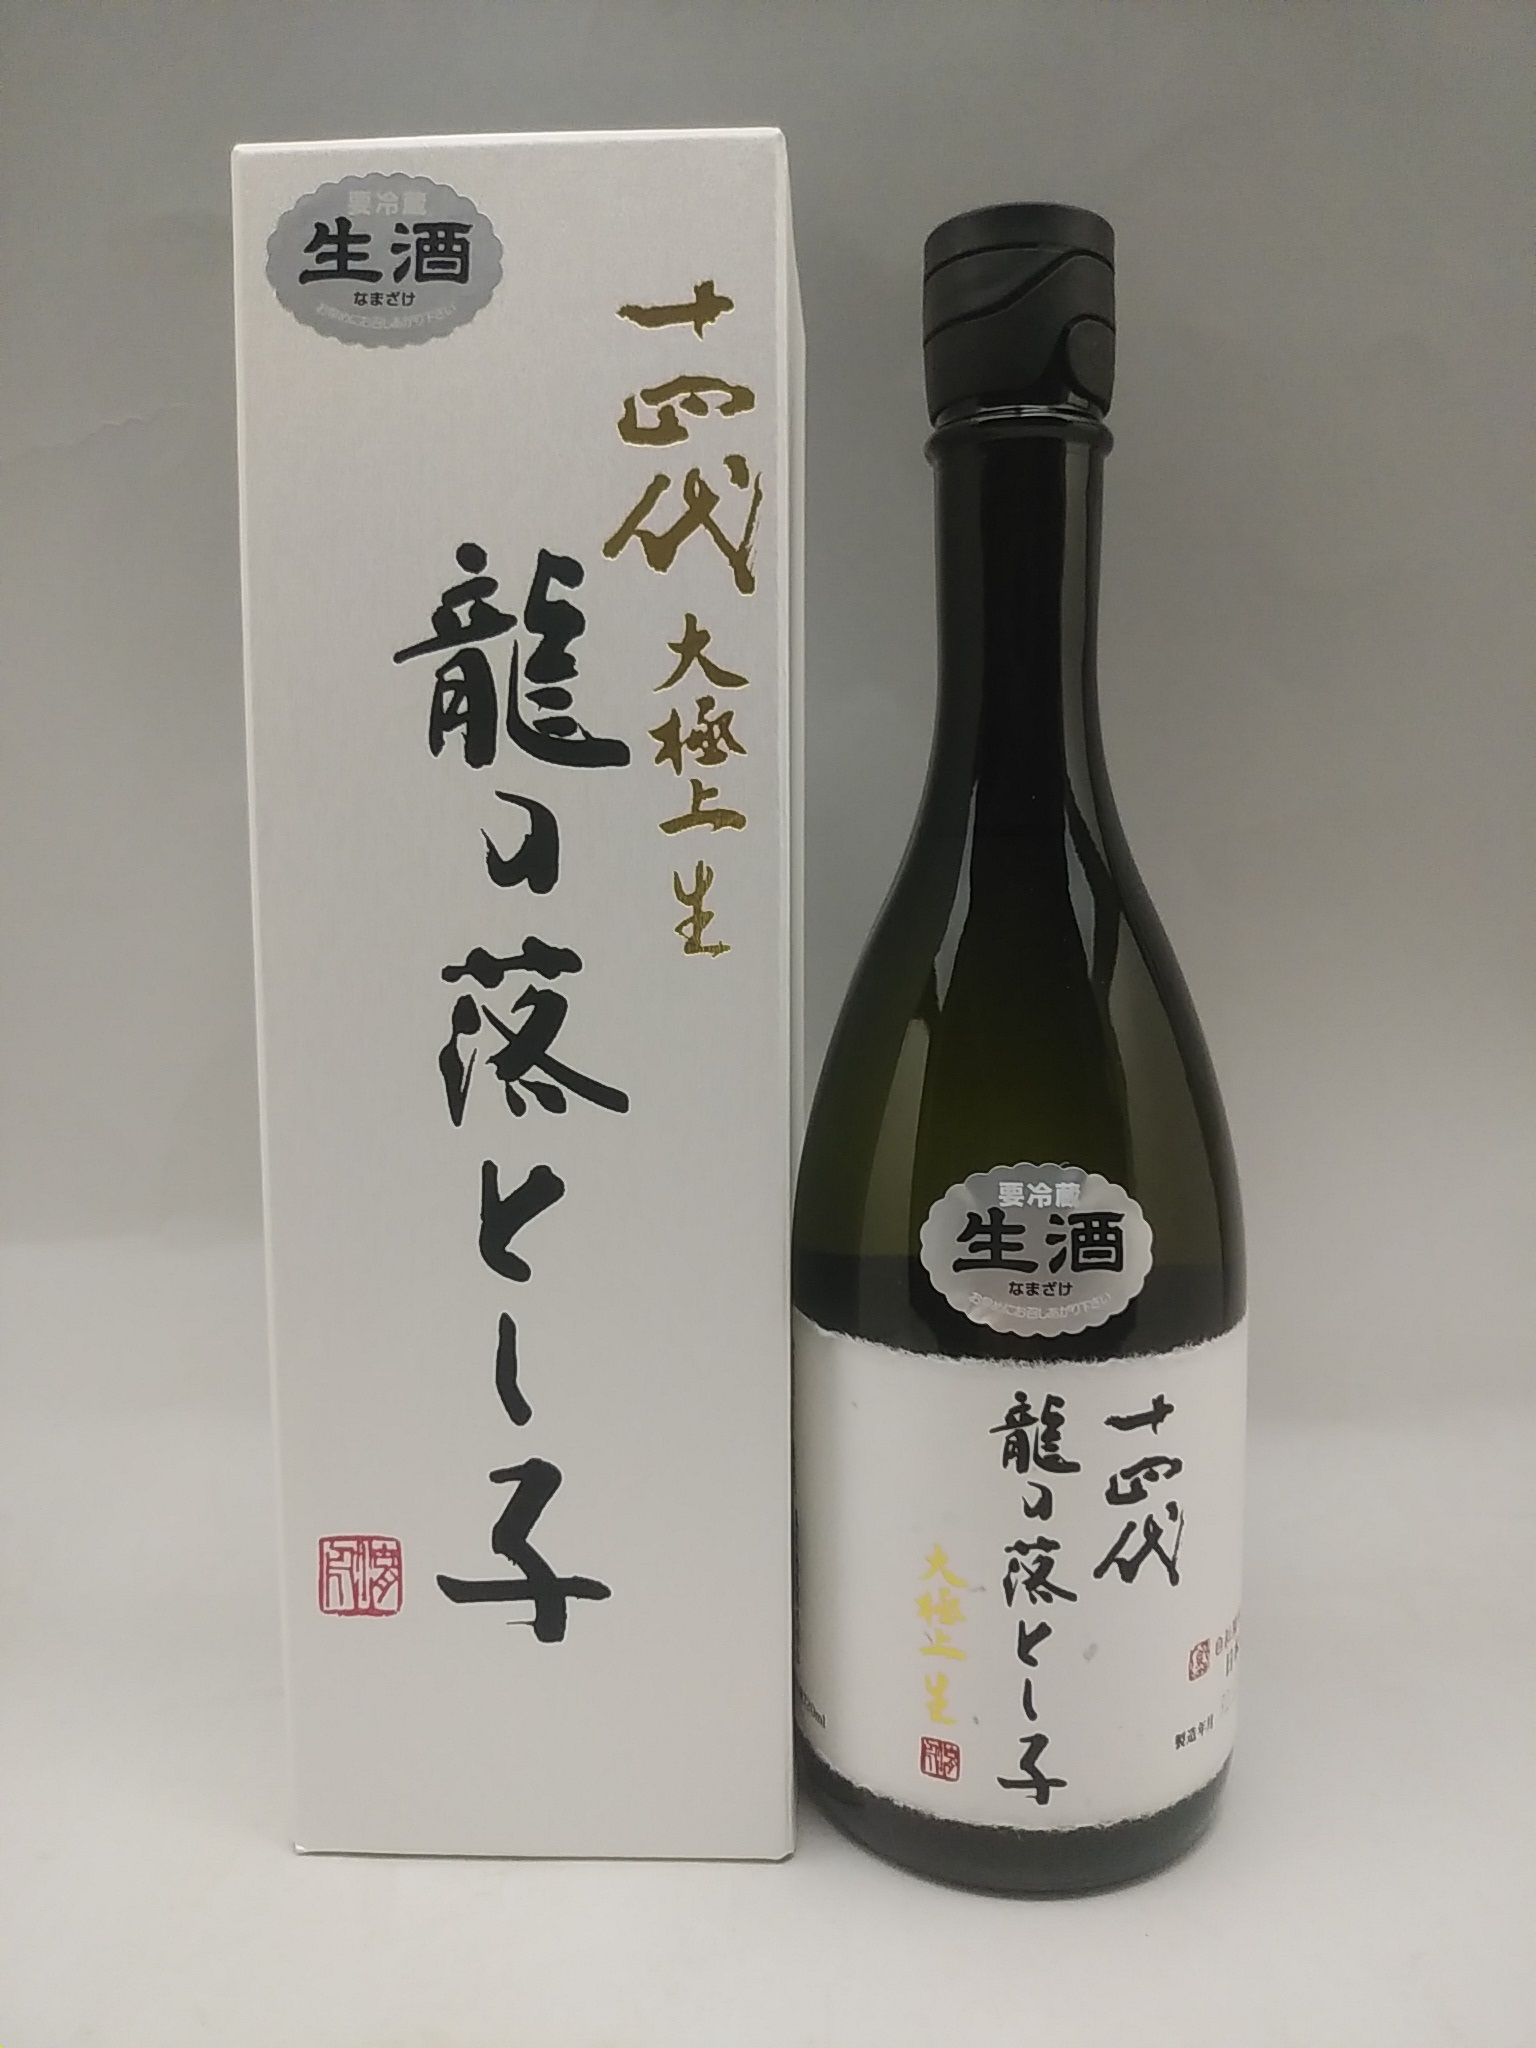 十四代 大極上生 純米大吟醸 龍の落とし子 720ml 日本酒 2021年12月詰 | ケーオーリカーズ